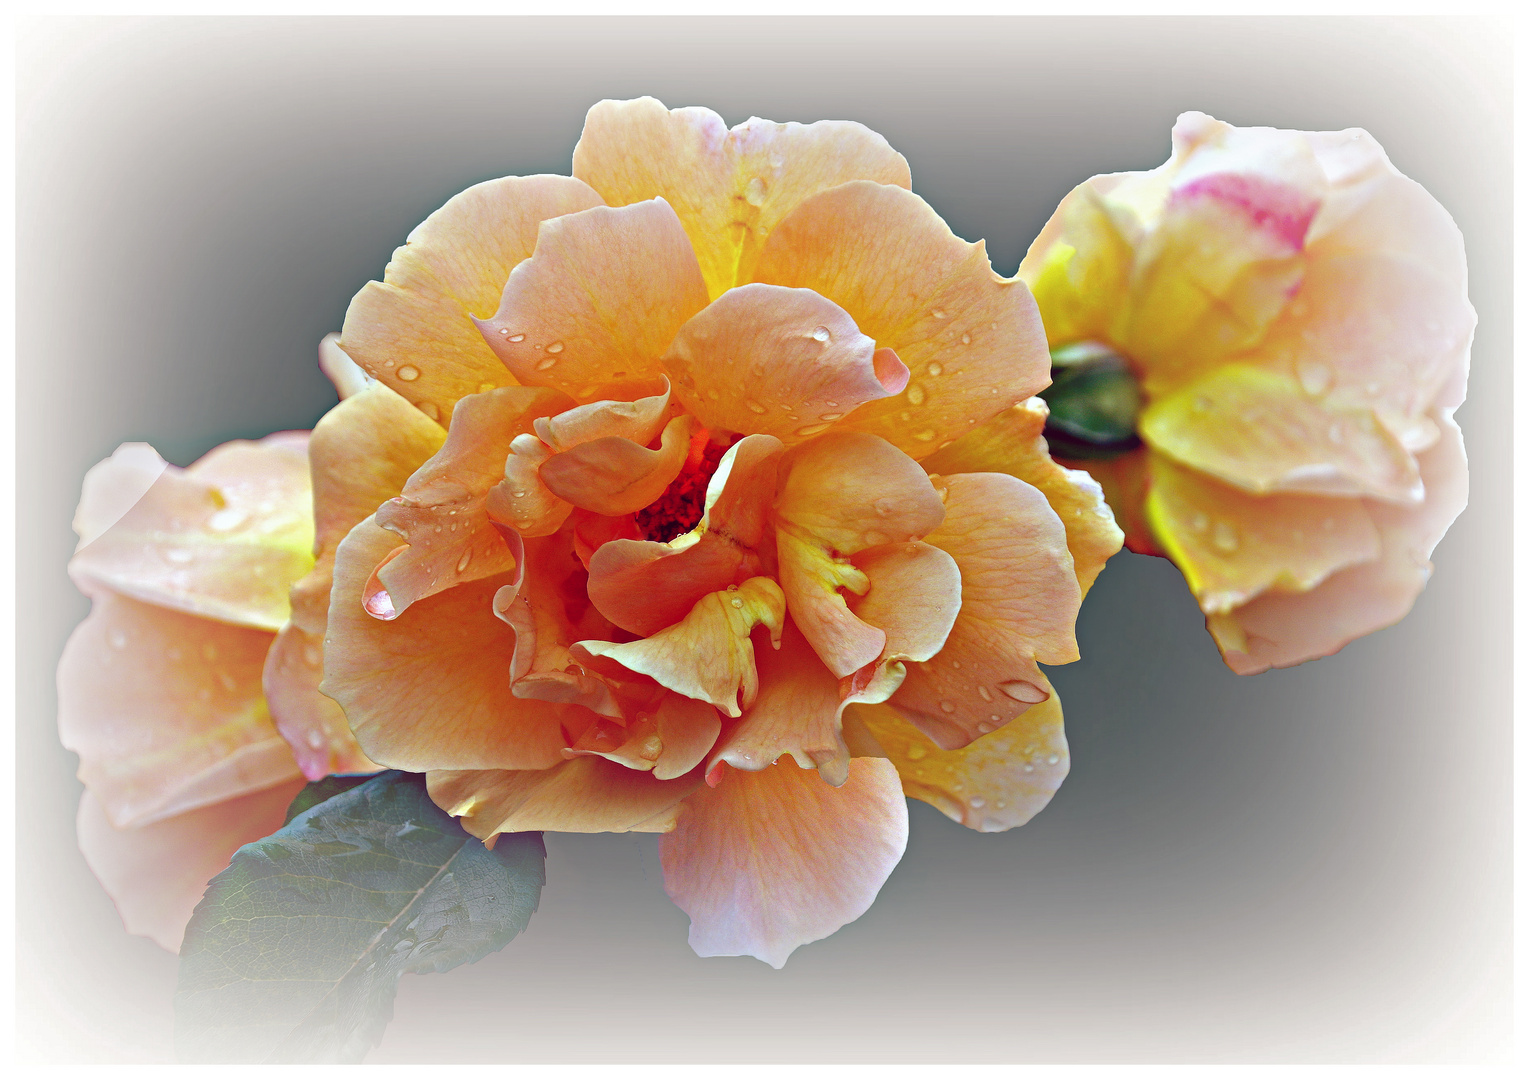 le charme discret des roses jaunes....